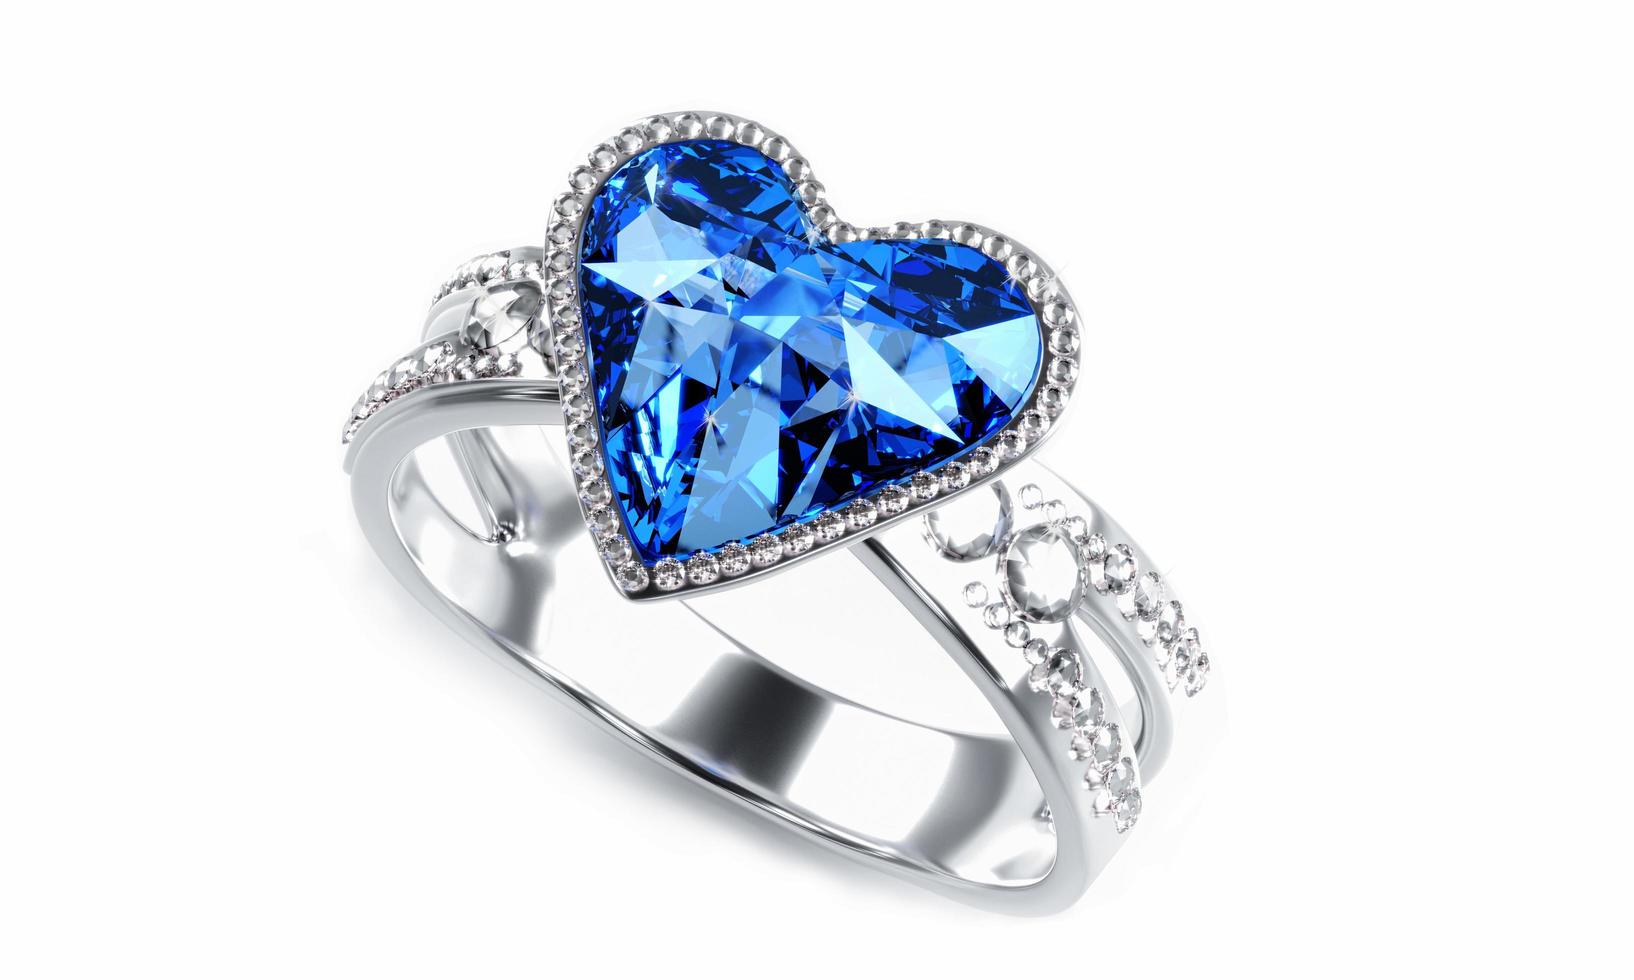 el gran diamante azul en forma de corazón está rodeado de muchos diamantes en el anillo de oro platino colocado sobre un fondo gris. Elegante anillo de bodas con diamantes para mujer. representación 3d foto